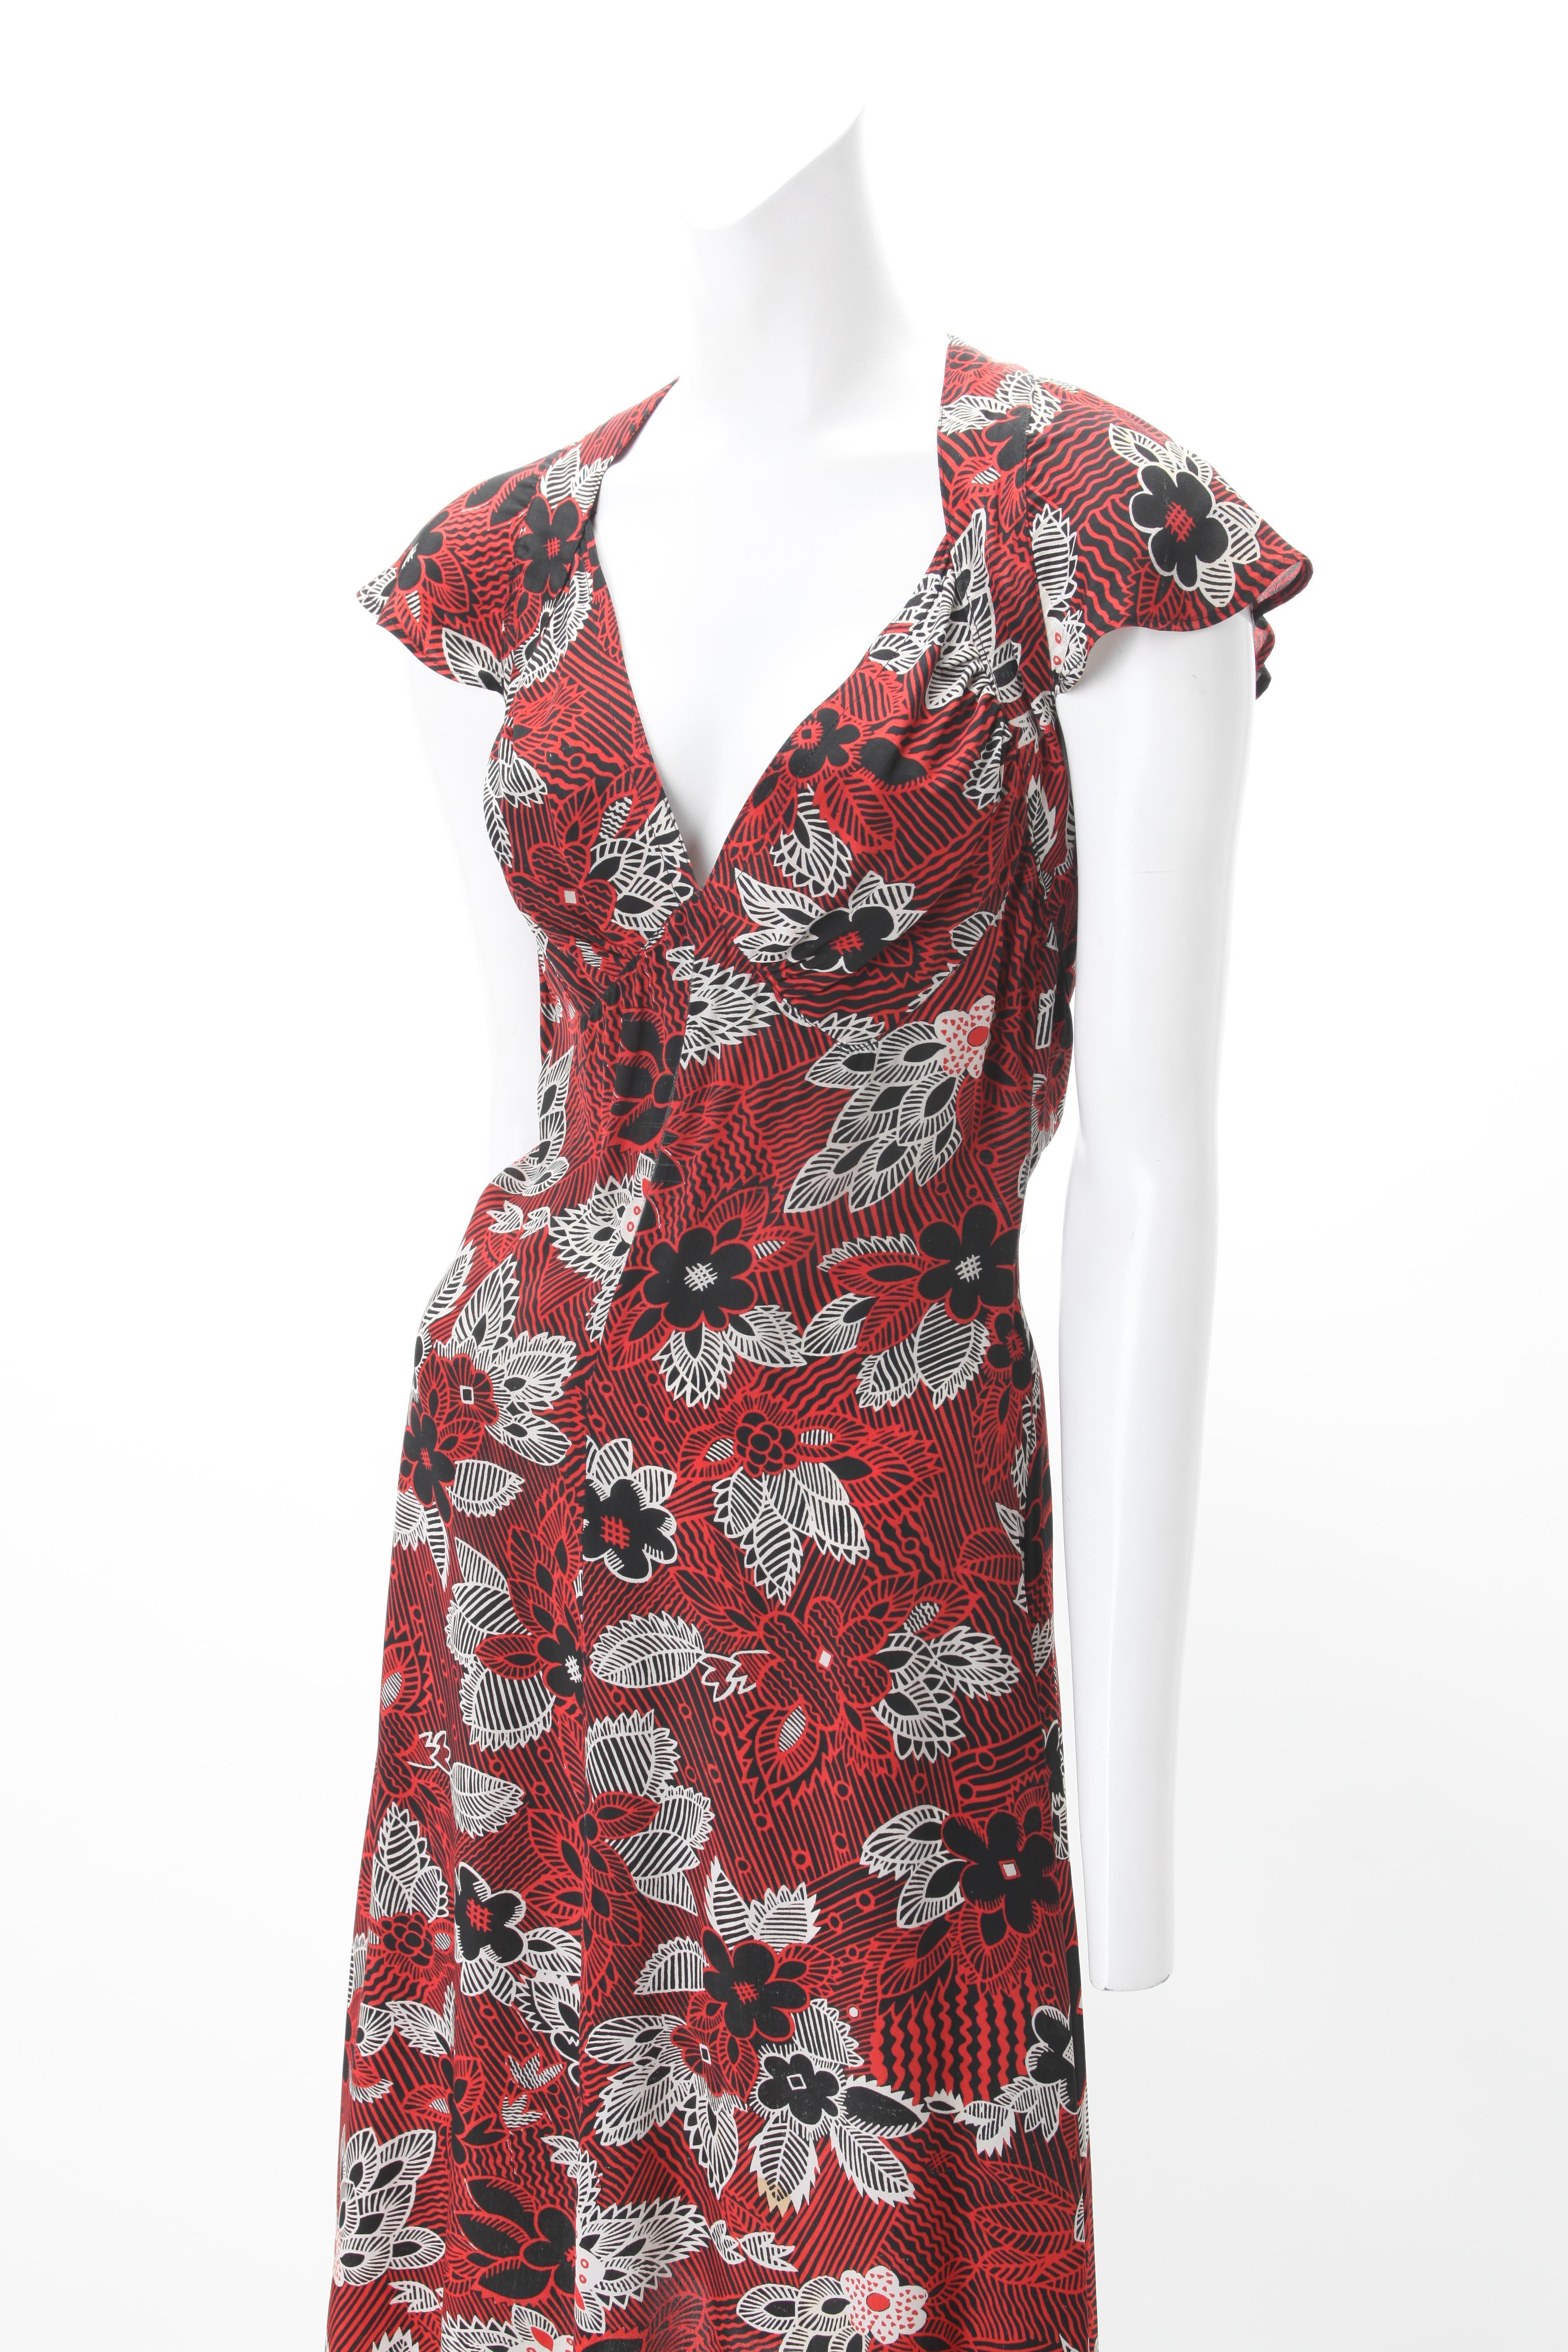 Ossie Clark Celia Birtwell Printed Dress v. 1970s Portée par Julia Roberts dans Conspiracy Theory en 1997 ; Robe Empire avec liens à l'encolure et fermeture à glissière dans le dos ; Motif floral abstrait imprimé en rouge, noir et blanc.